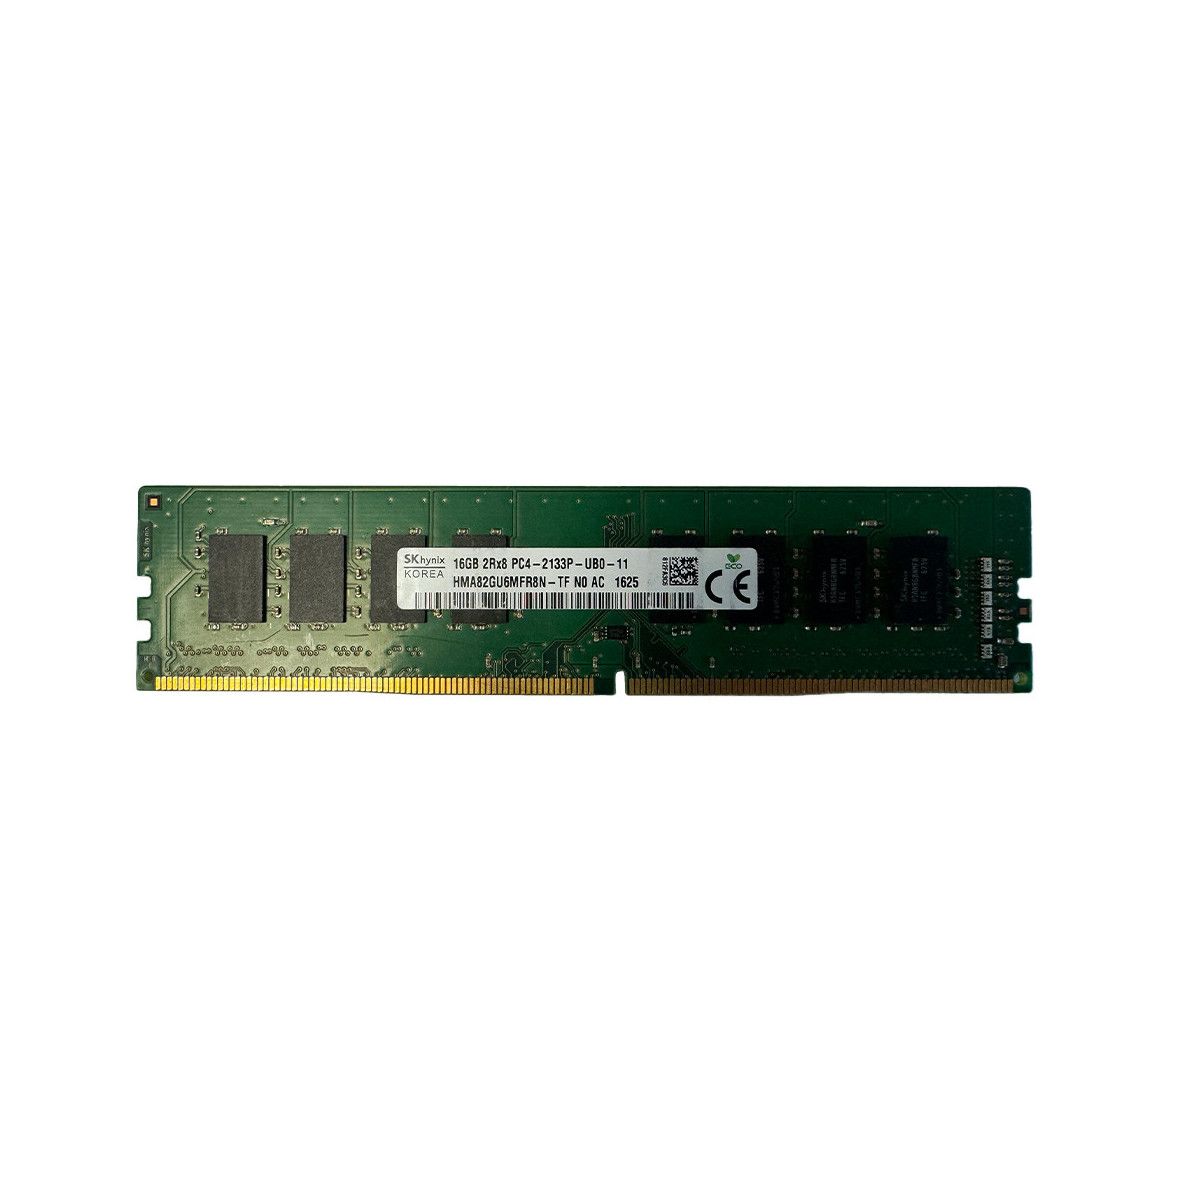 805671-B21-MS -JA- Memstar 1x 16GB DDR4-2133 Unbuffered UDIMM